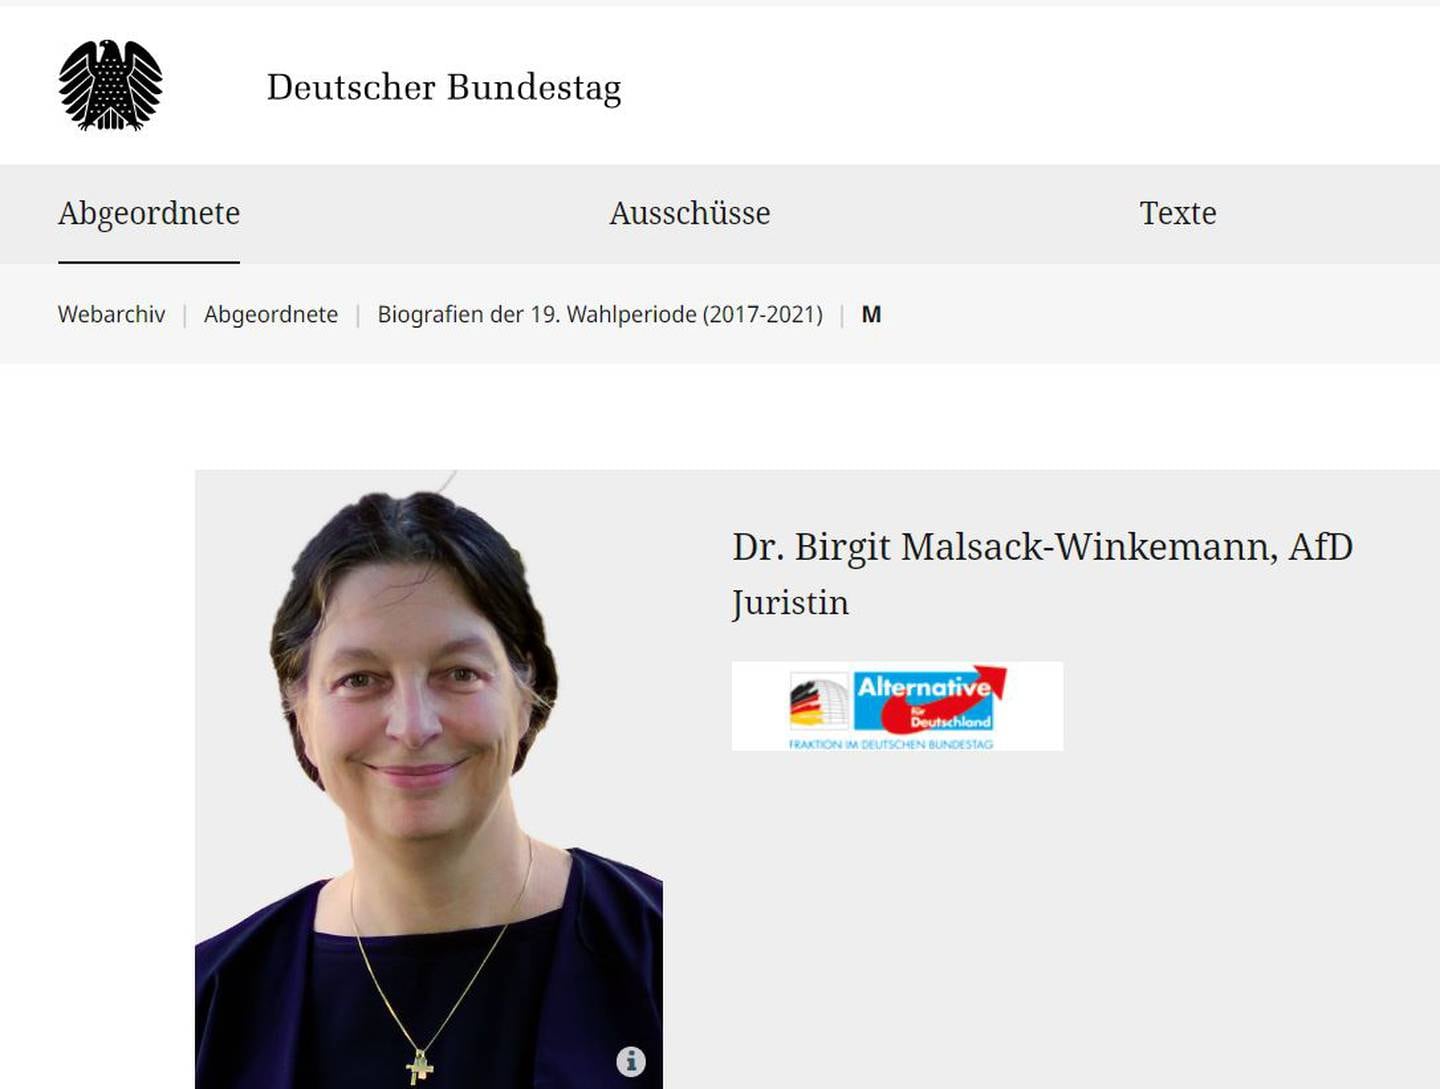 Birgit Malsack-Winkemann, Bundestag-representant for AfD fra 2017-2021, ble onsdag pågrepet, mistenkt for å ha deltatt i planlegging av statskupp